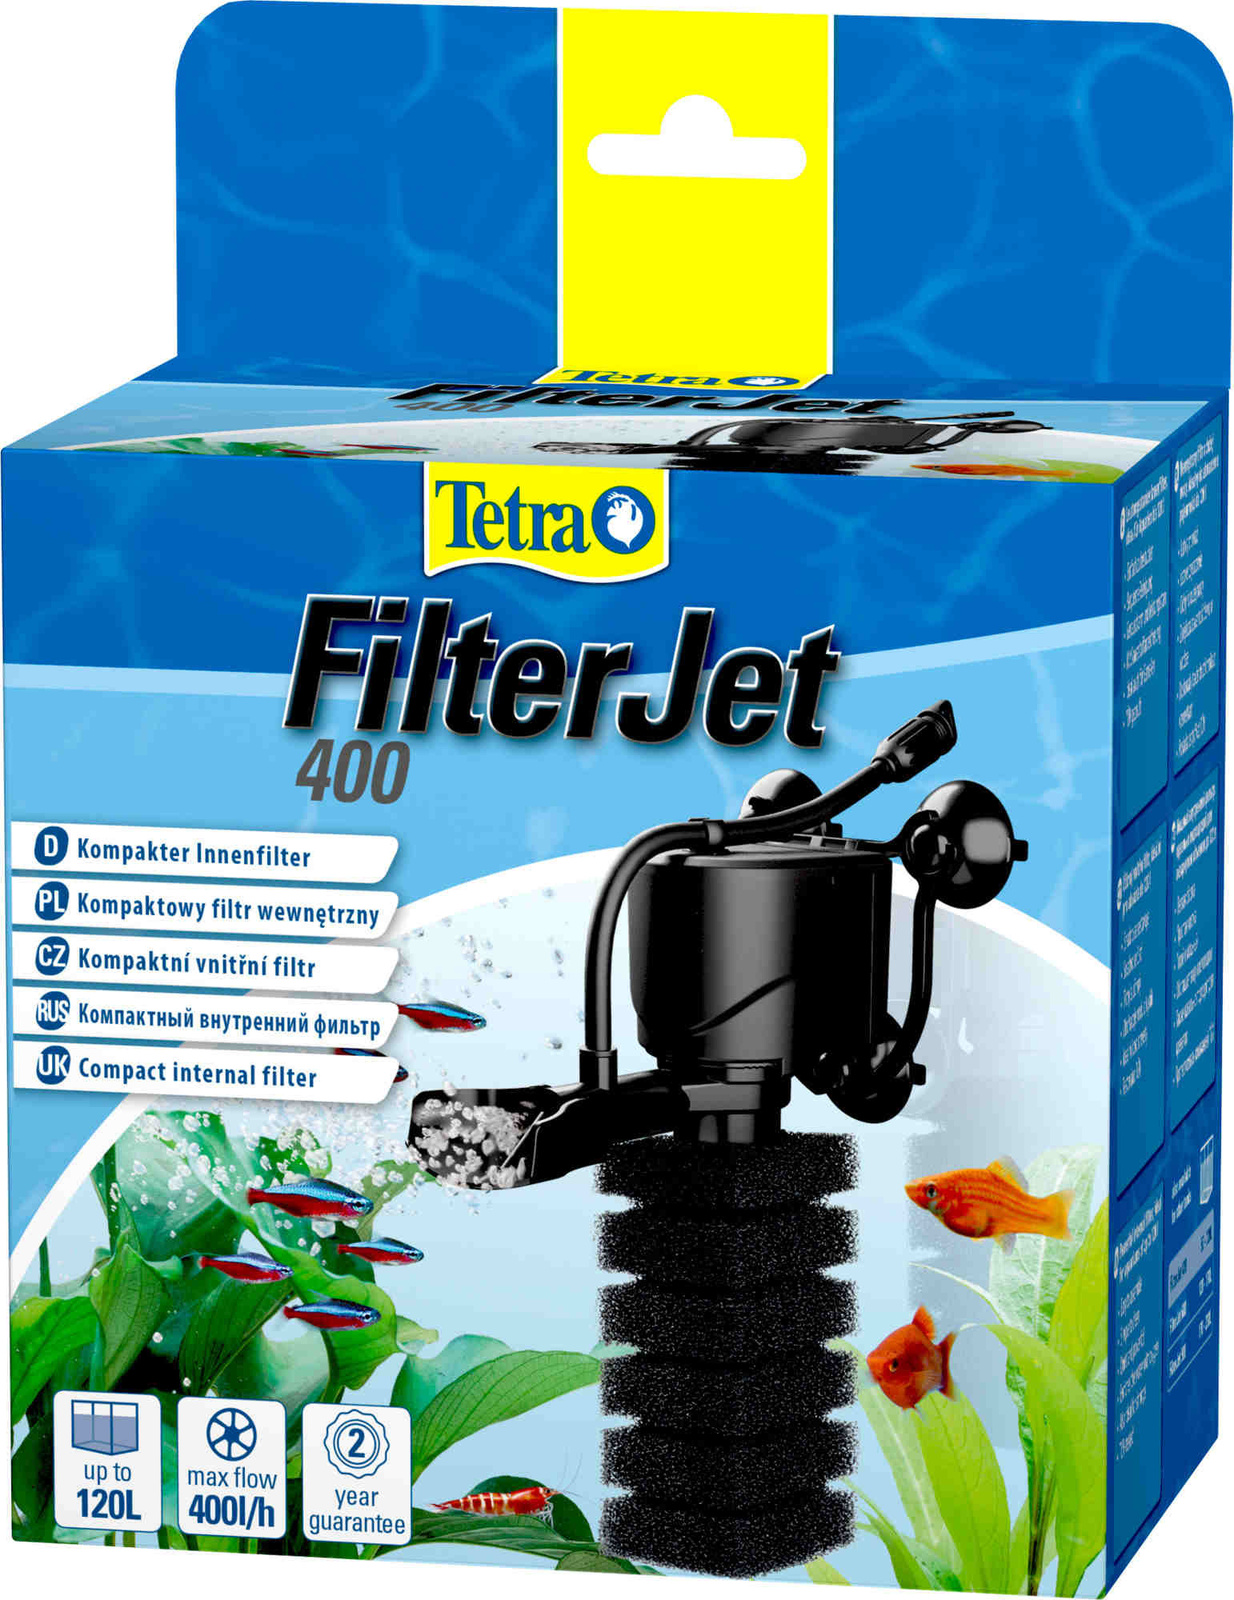 Tetra (оборудование) Tetra (оборудование) внутренний фильтр FilterJet 400, для аквариумов 50 – 120л (460 г) tetra ротор для фильтра tetra filterjet 600